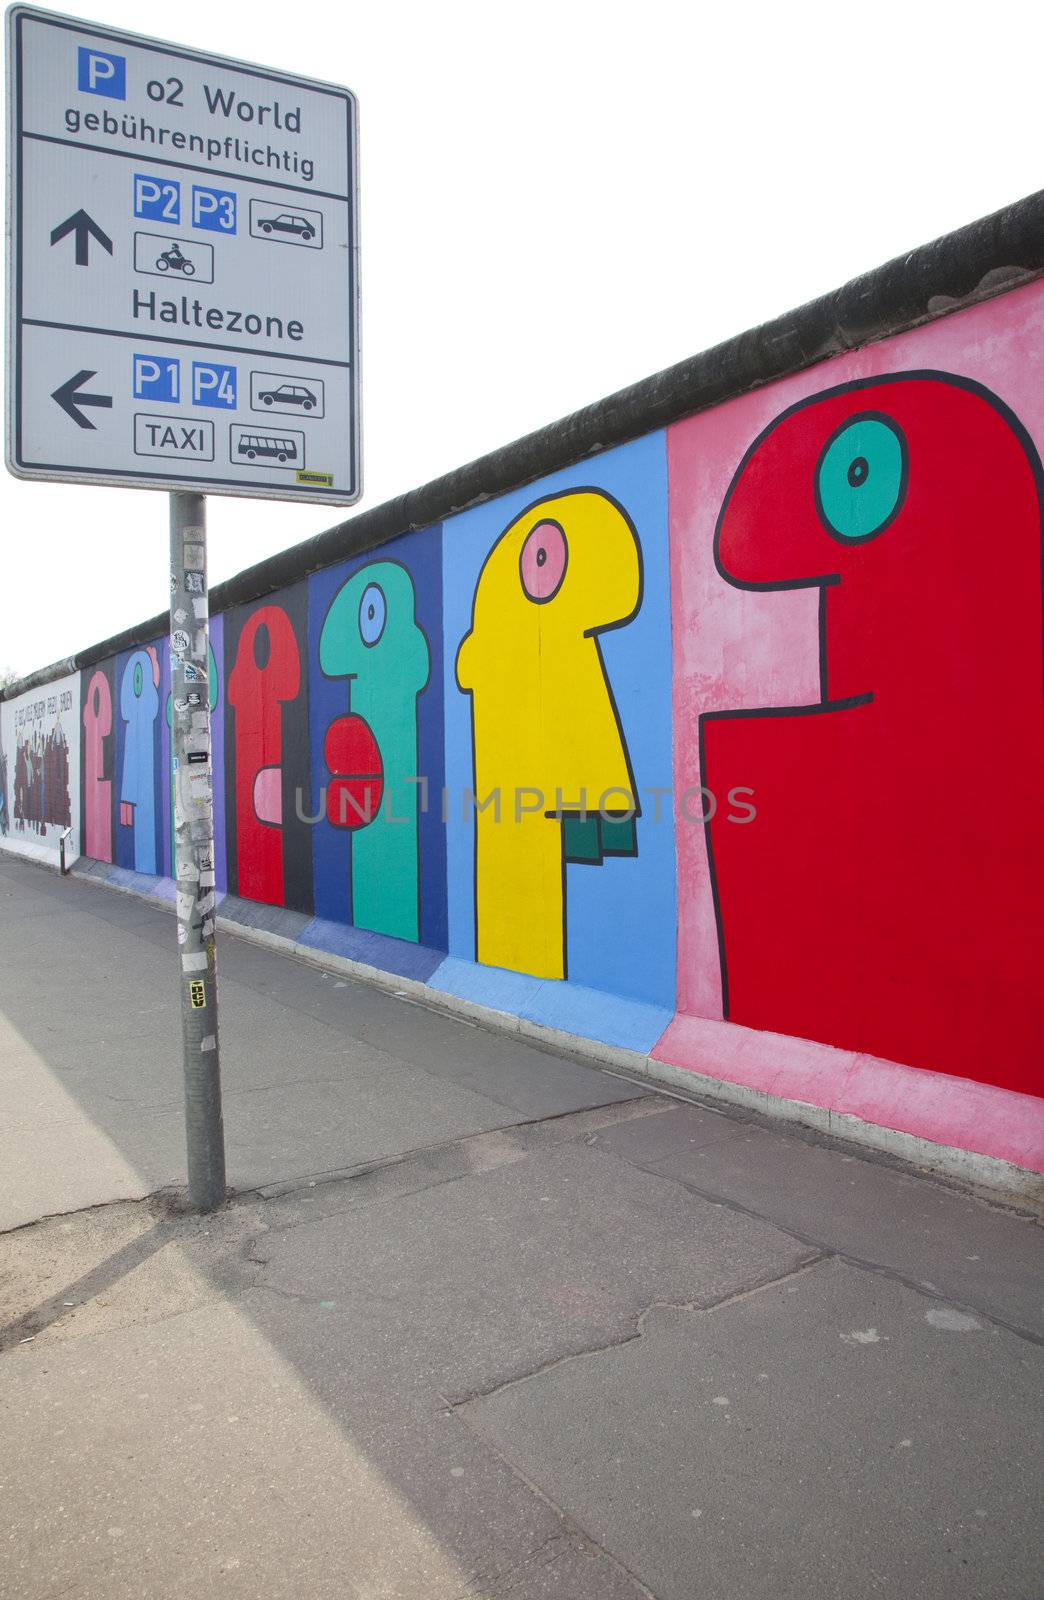 The Berlin Wall (East Side Gallery).